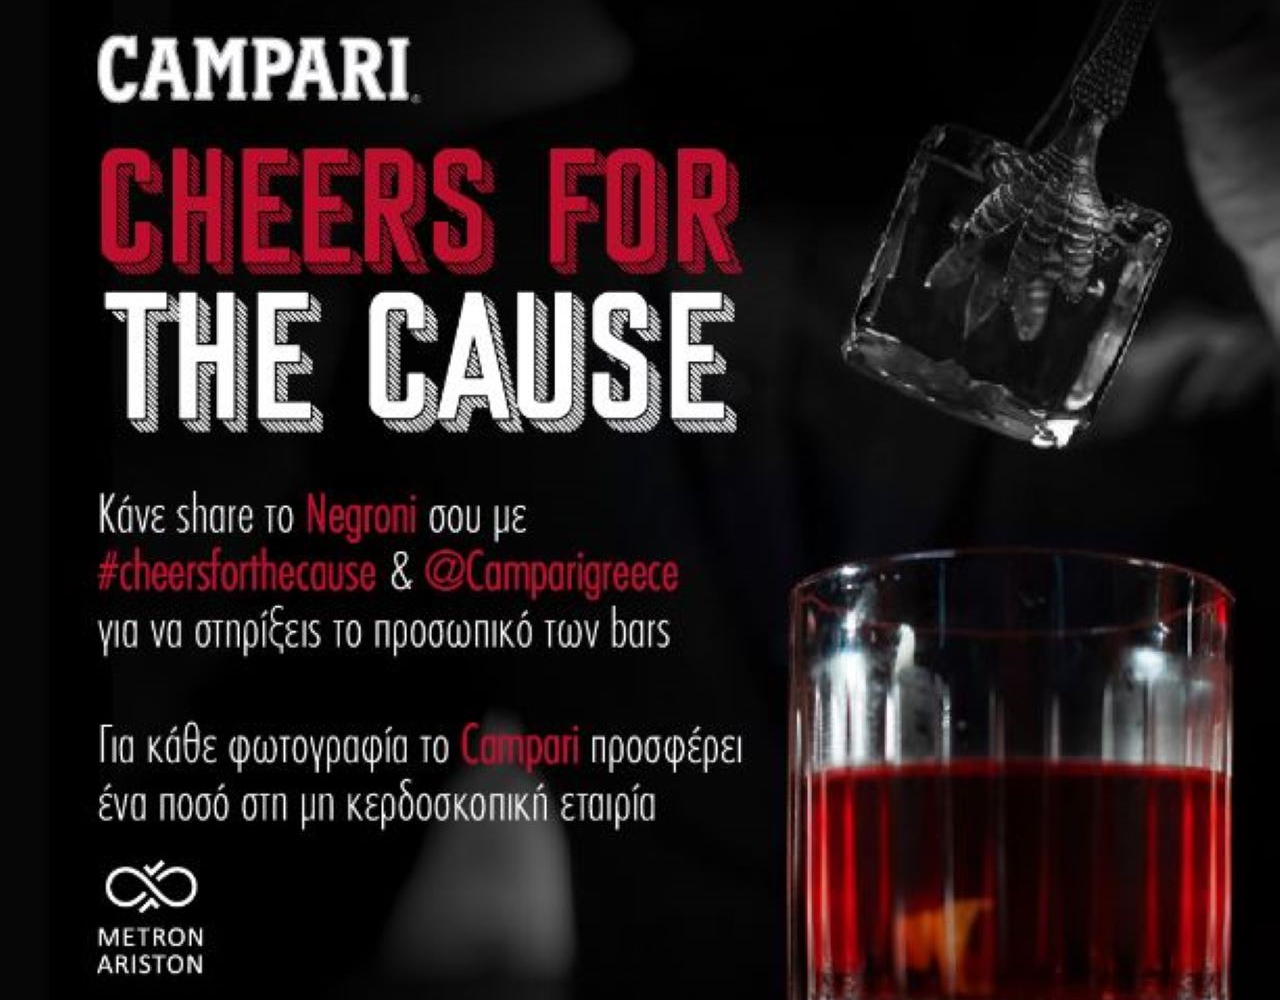 Το Campari στηρίζει τον κλάδο Ho.Re.Ca με την πρωτοβουλία #CheersForTheCause